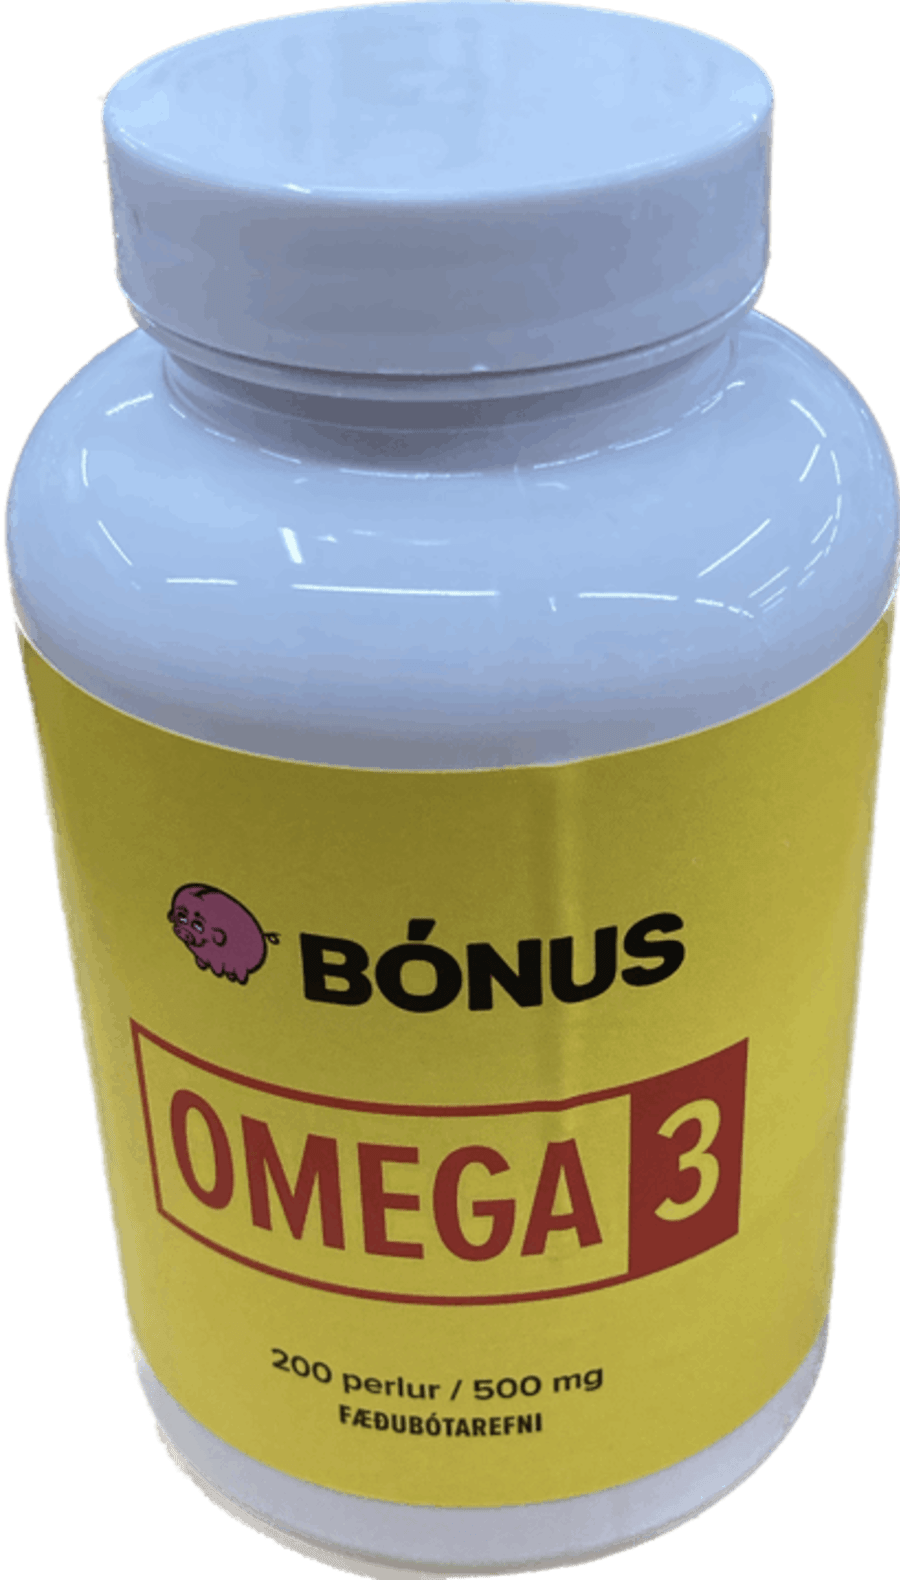 Bónus lýsi omega-3 200 stk